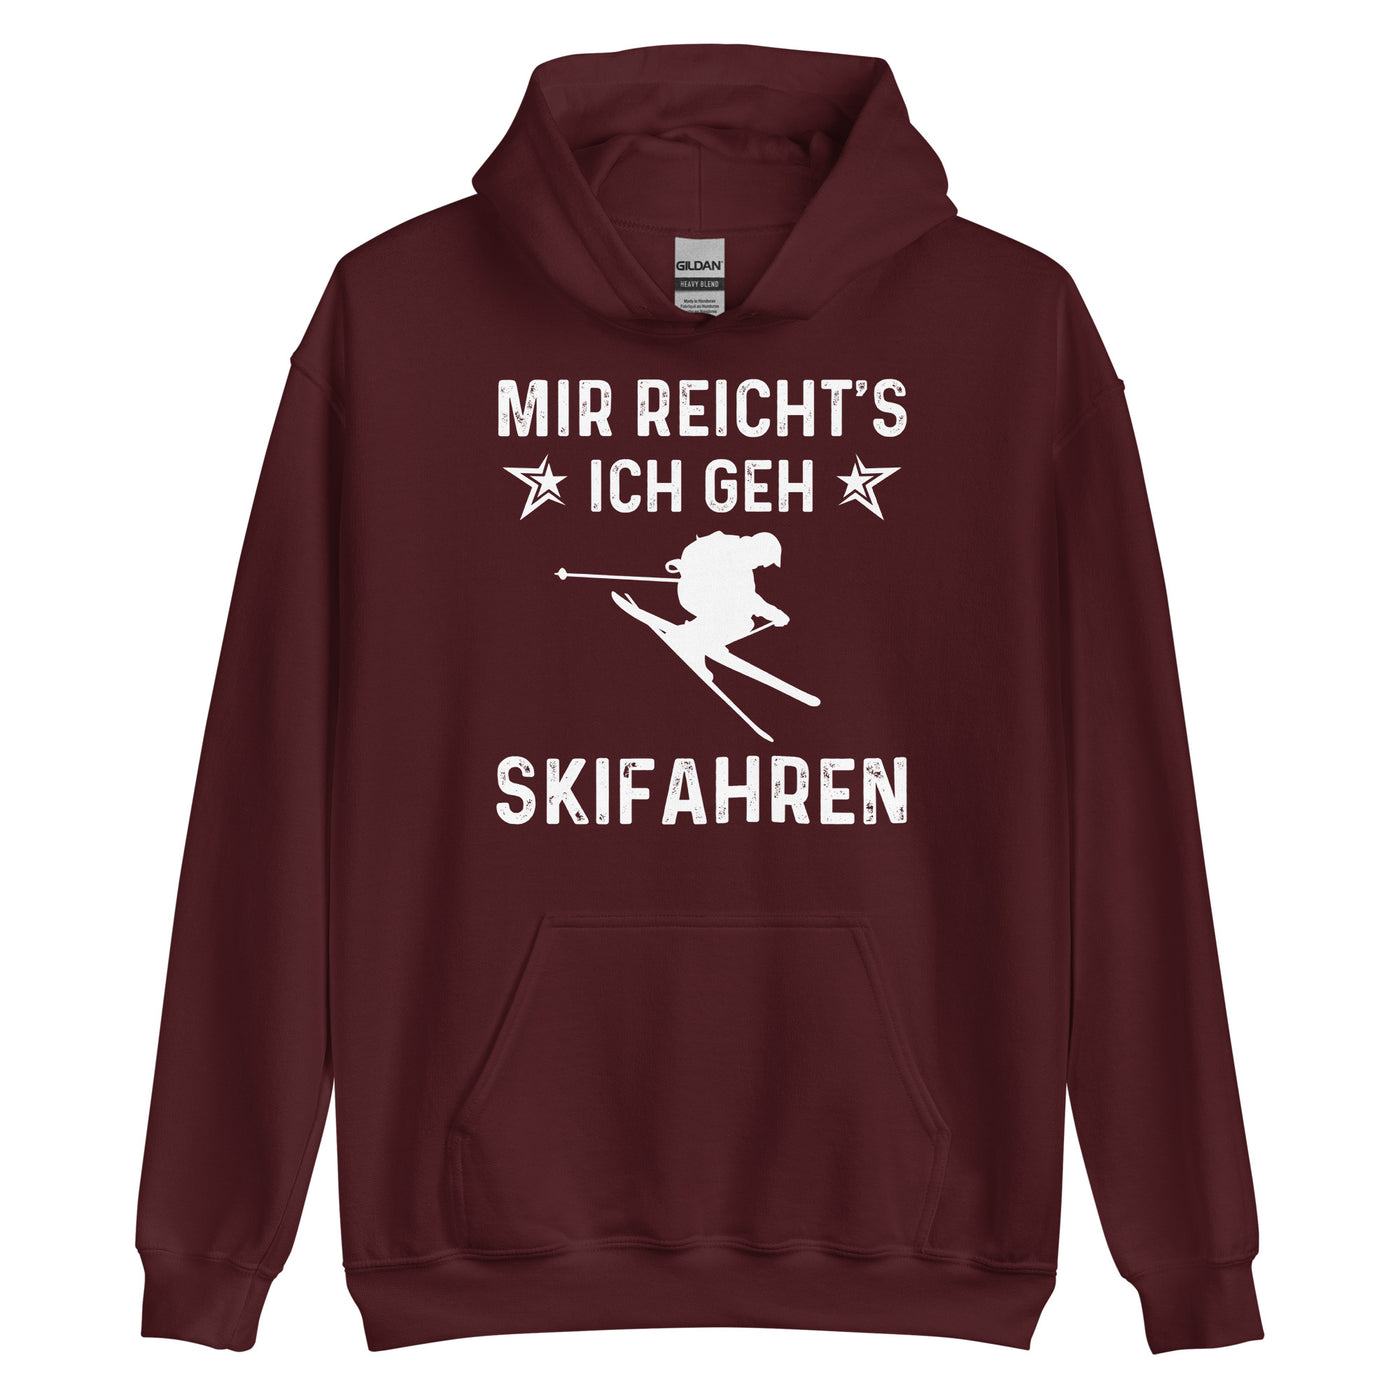 Mir Reicht's Ich Gen Skifahren - Unisex Hoodie klettern ski xxx yyy zzz Maroon